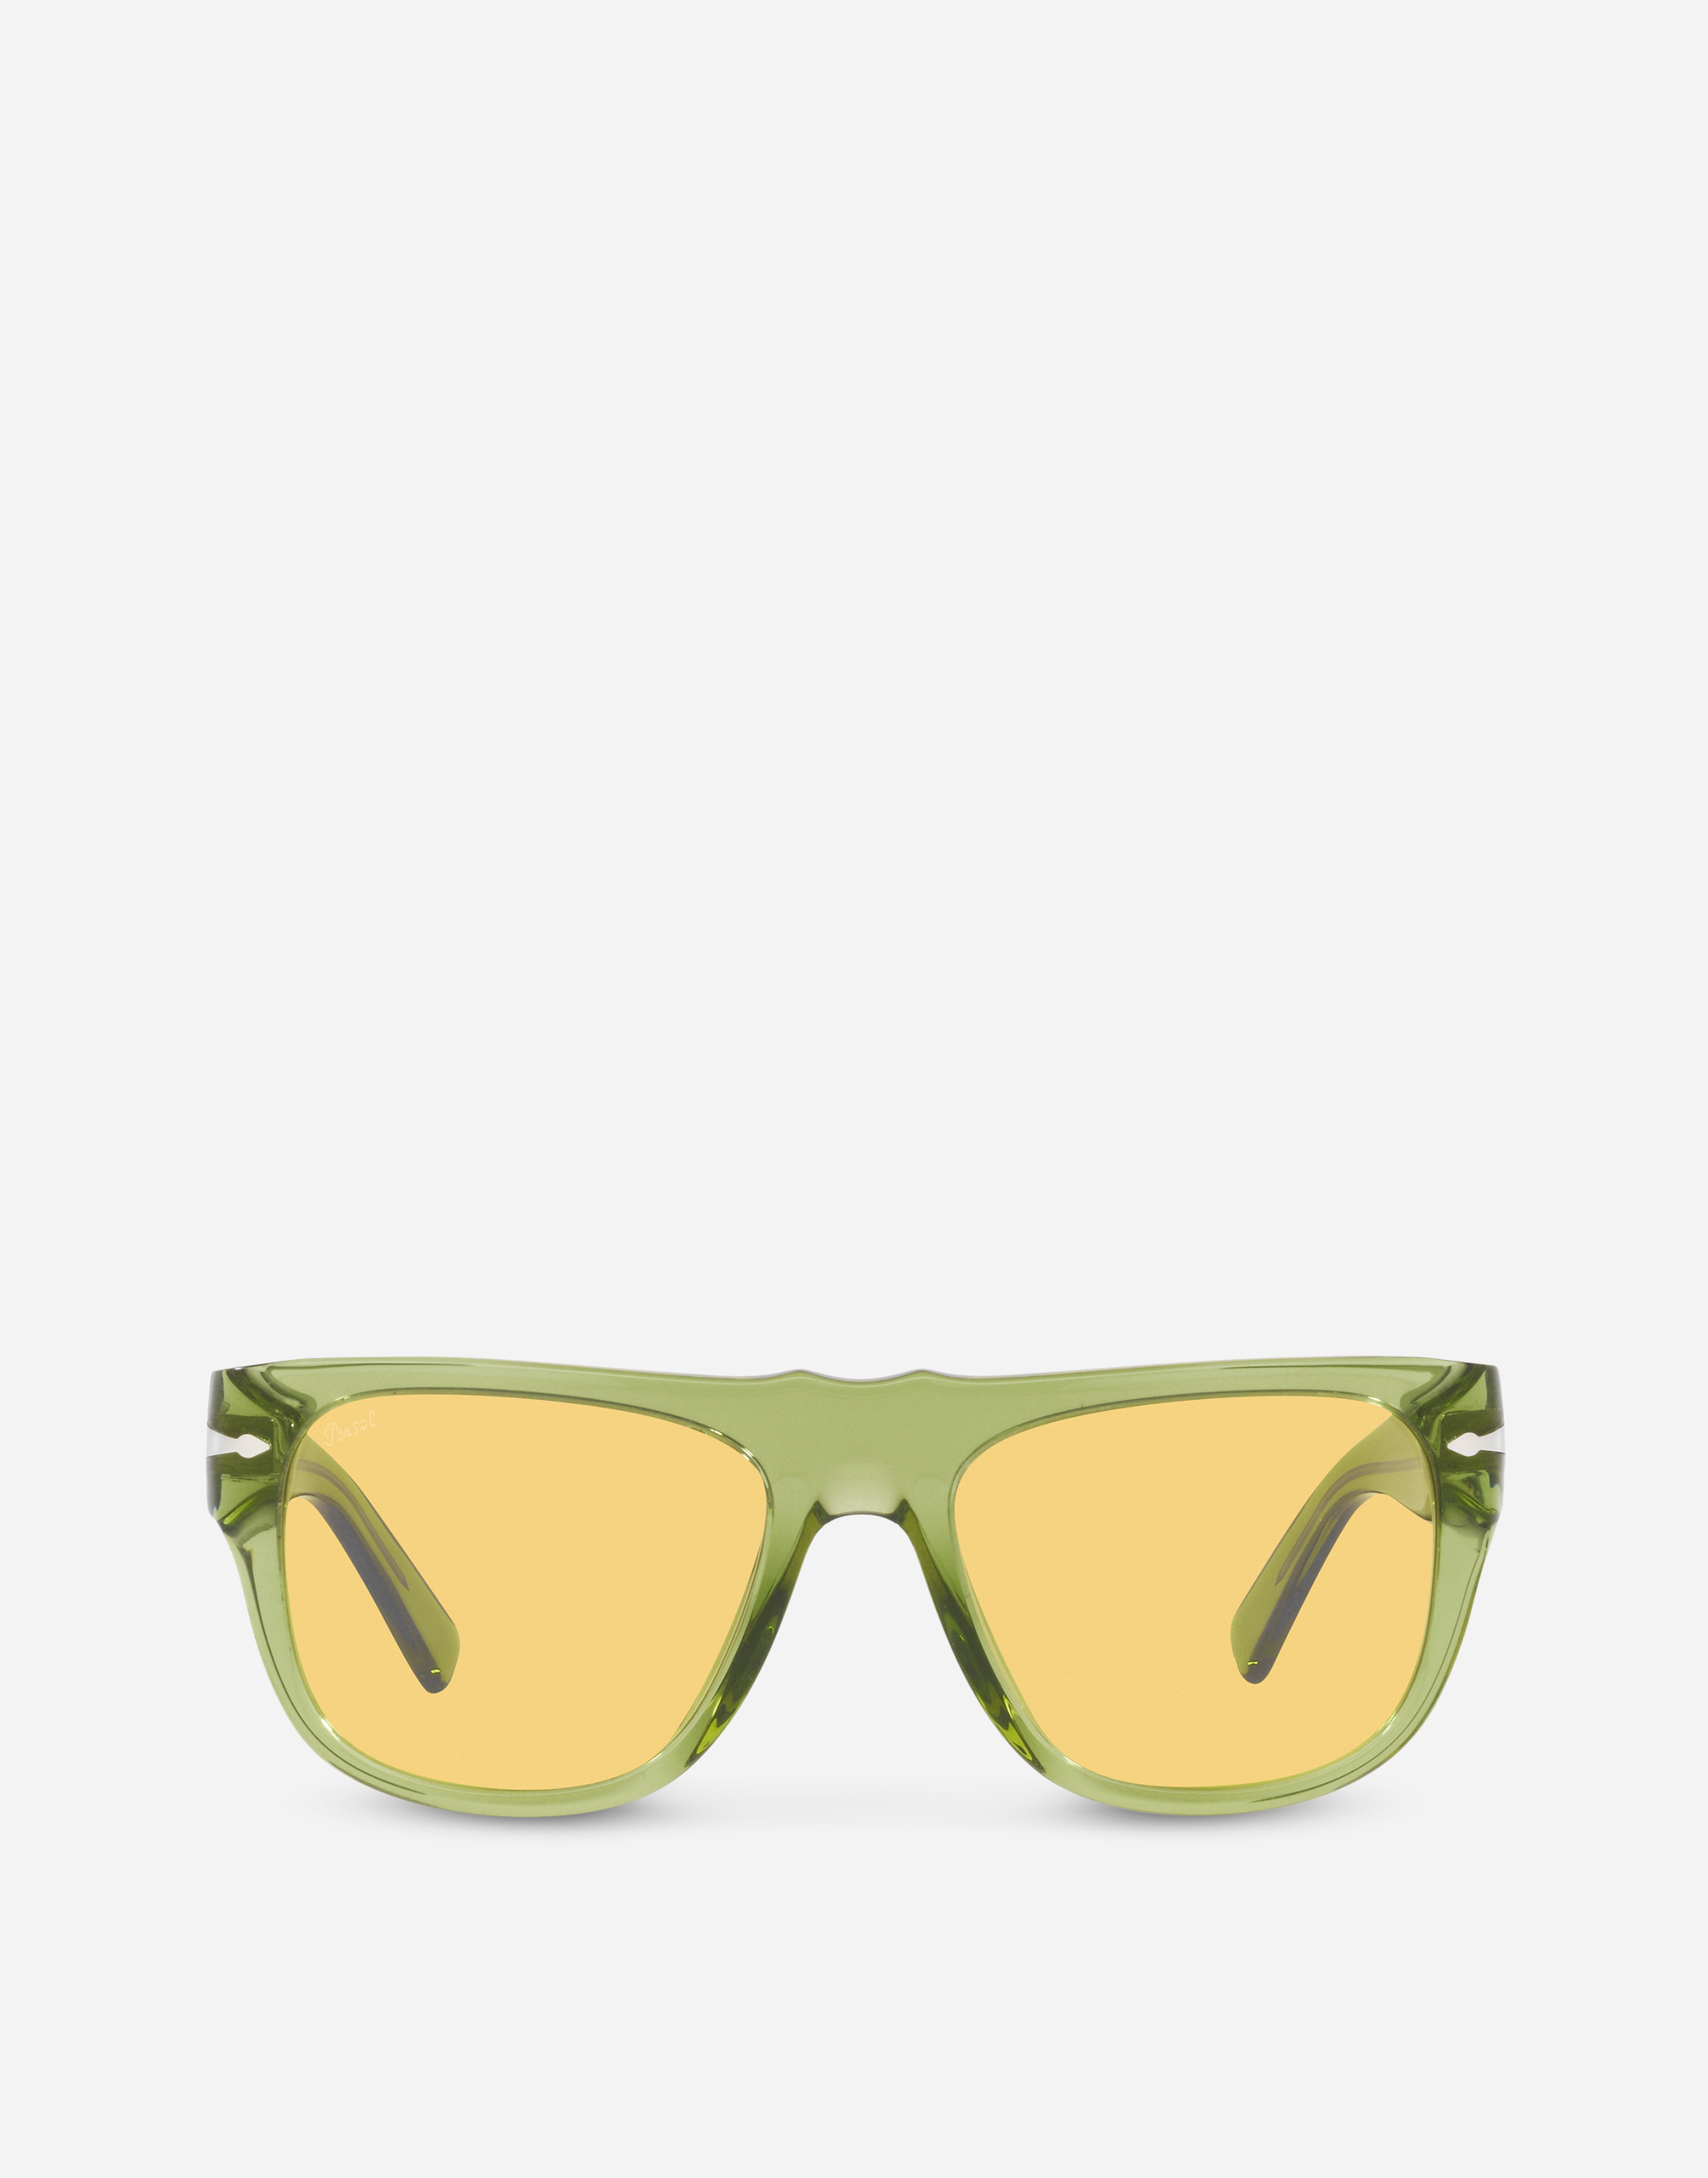 Dolce&Gabbana x Persol sunglasses in transparent green